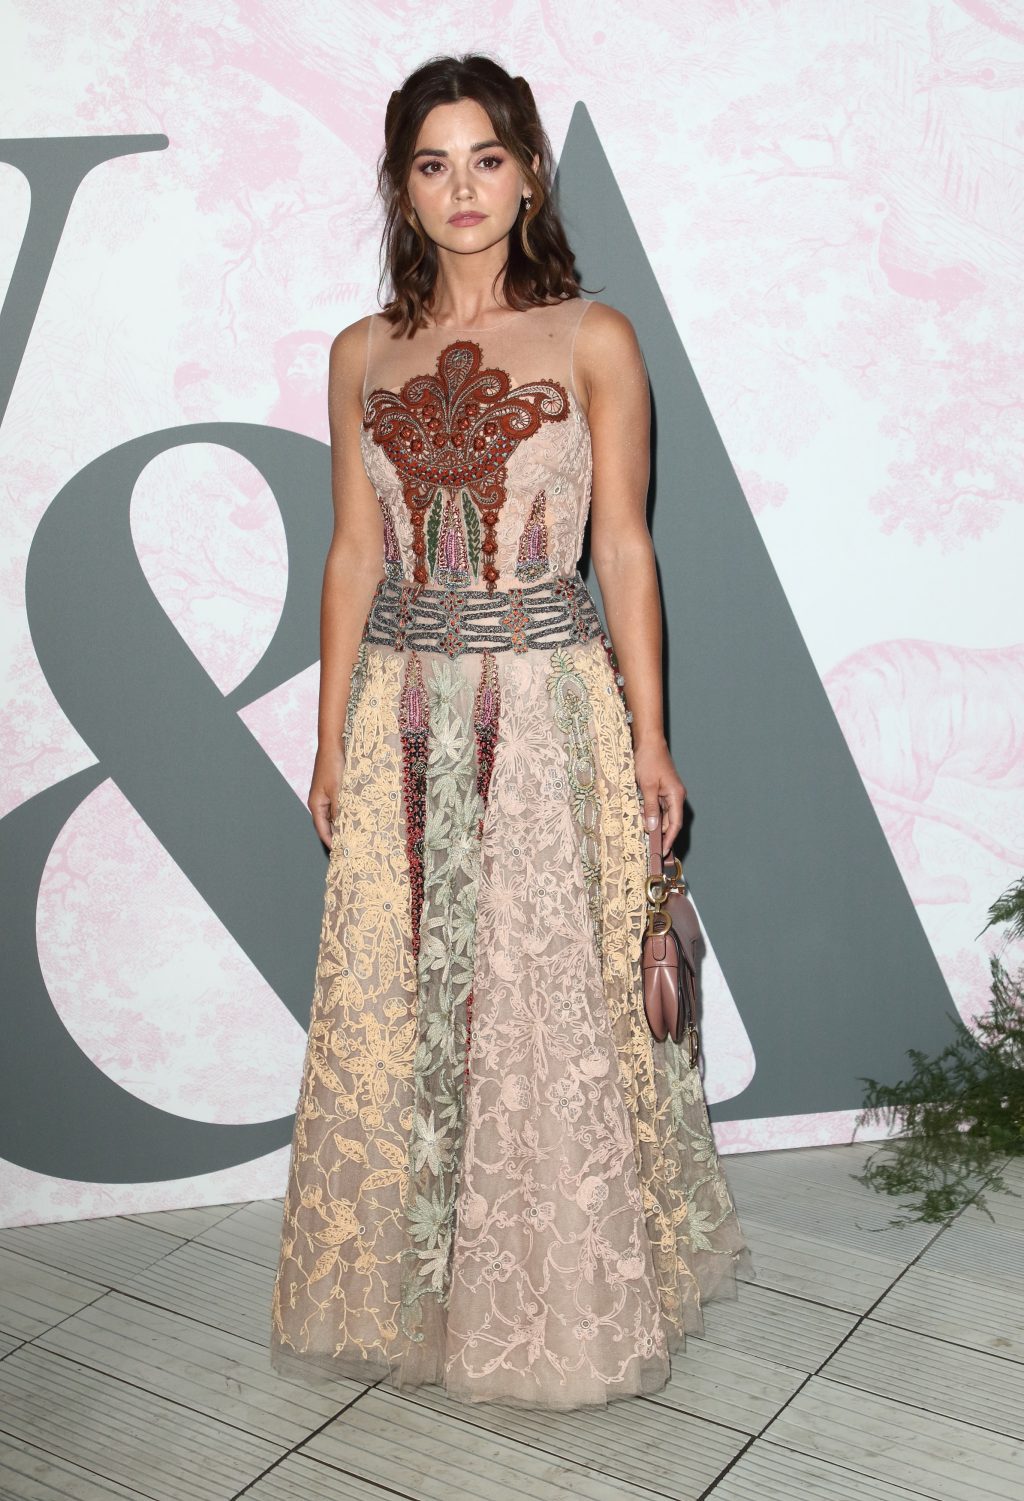 jenna coleman mặc đầm ren tại bữa tiệc mùa hè của Dior 2019